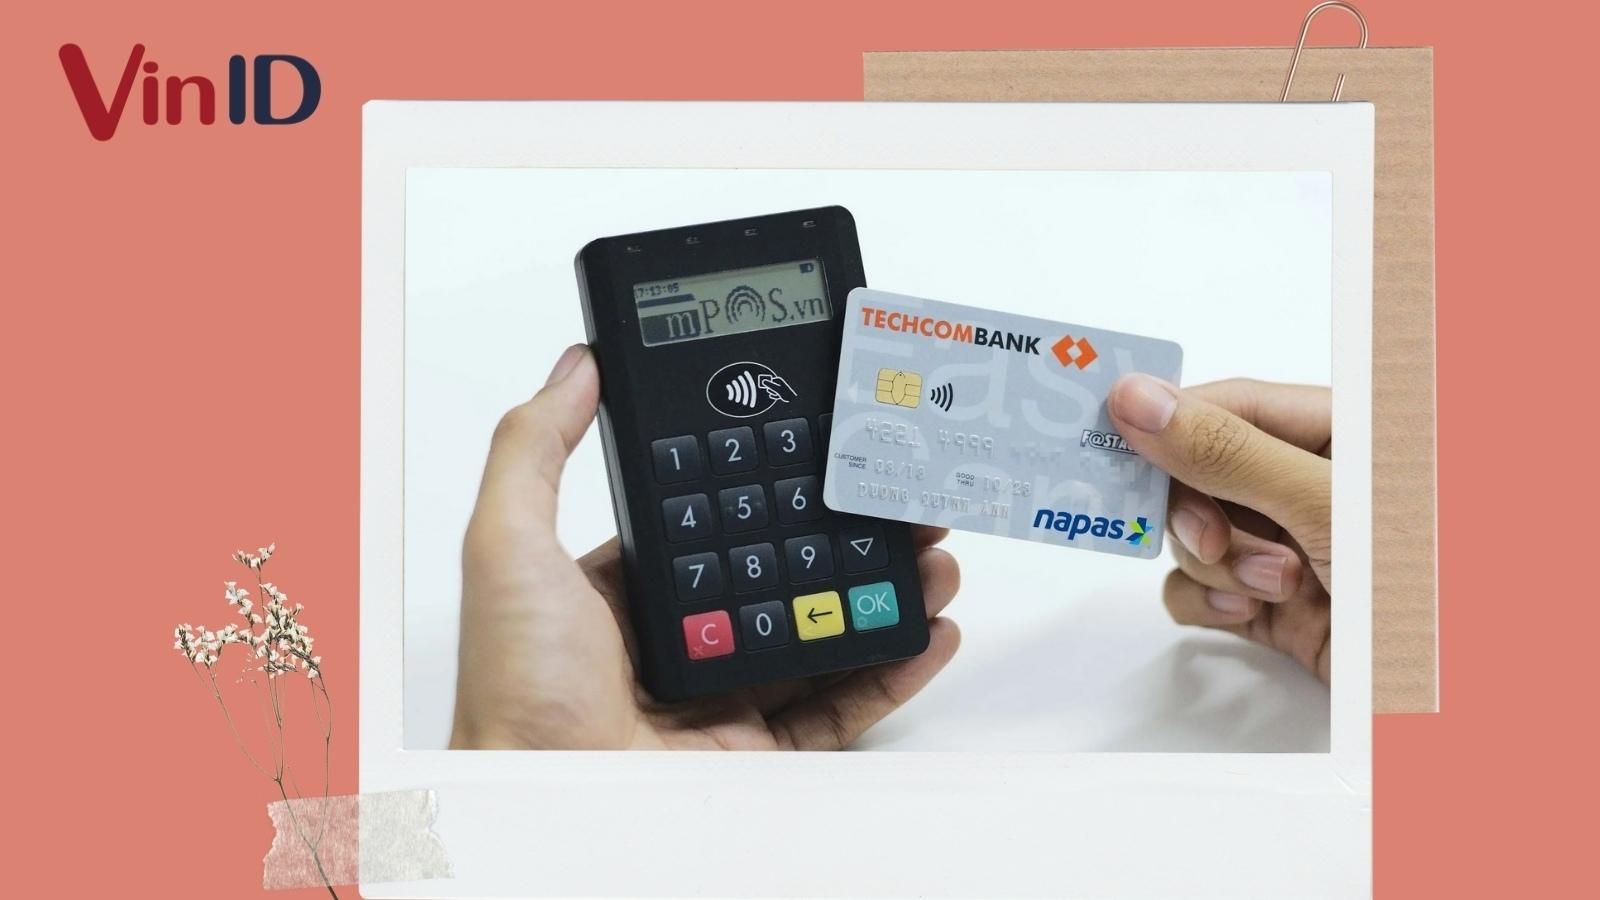 Lợi ích khi sử dụng thẻ tín dụng Napas?
